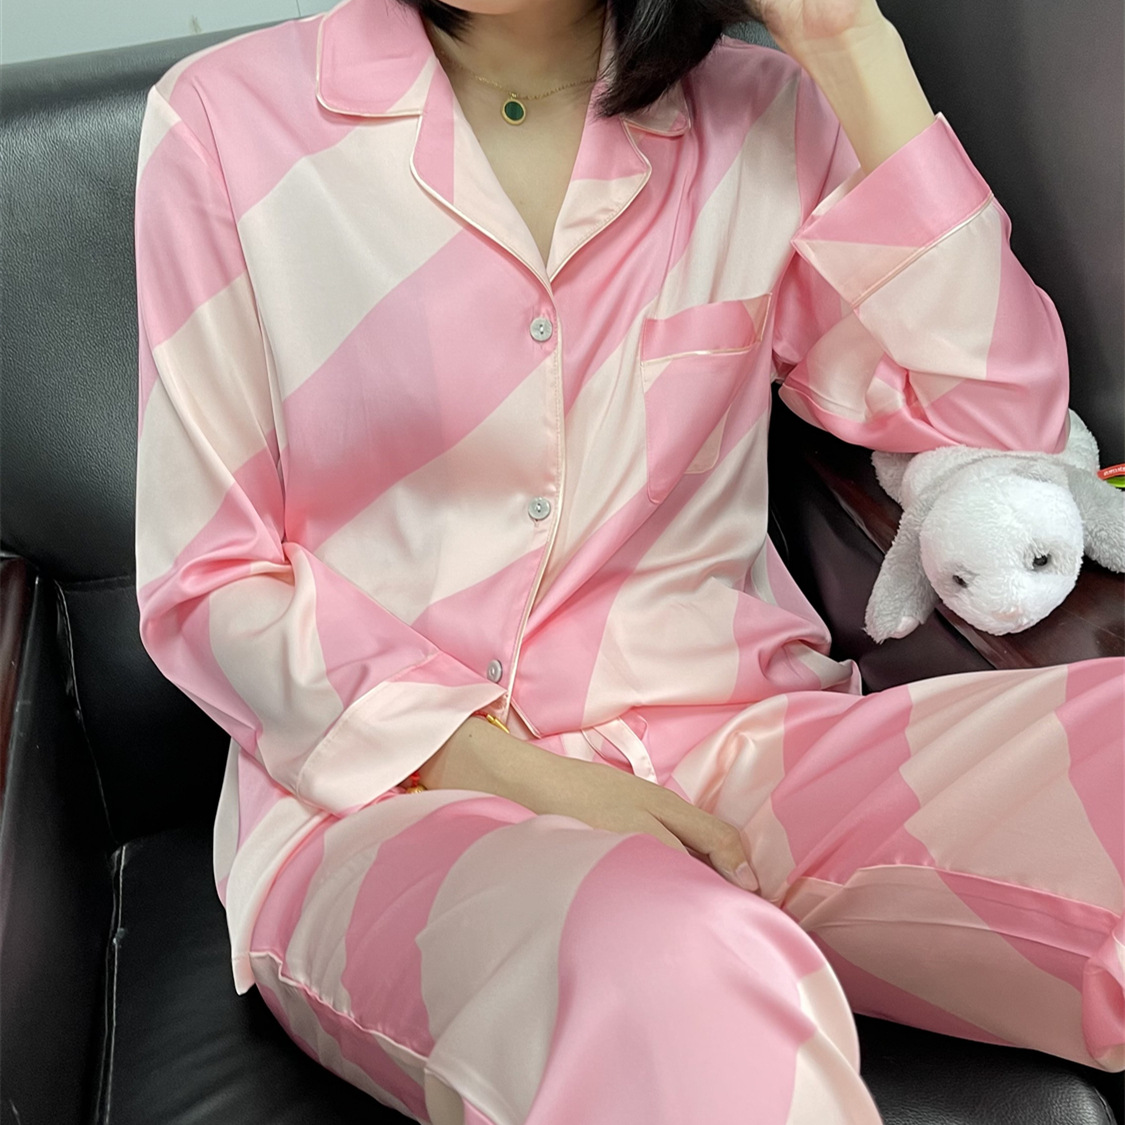 春秋热巴同款粉红色条纹冰丝睡衣长袖套装现货无痕代发详情图4